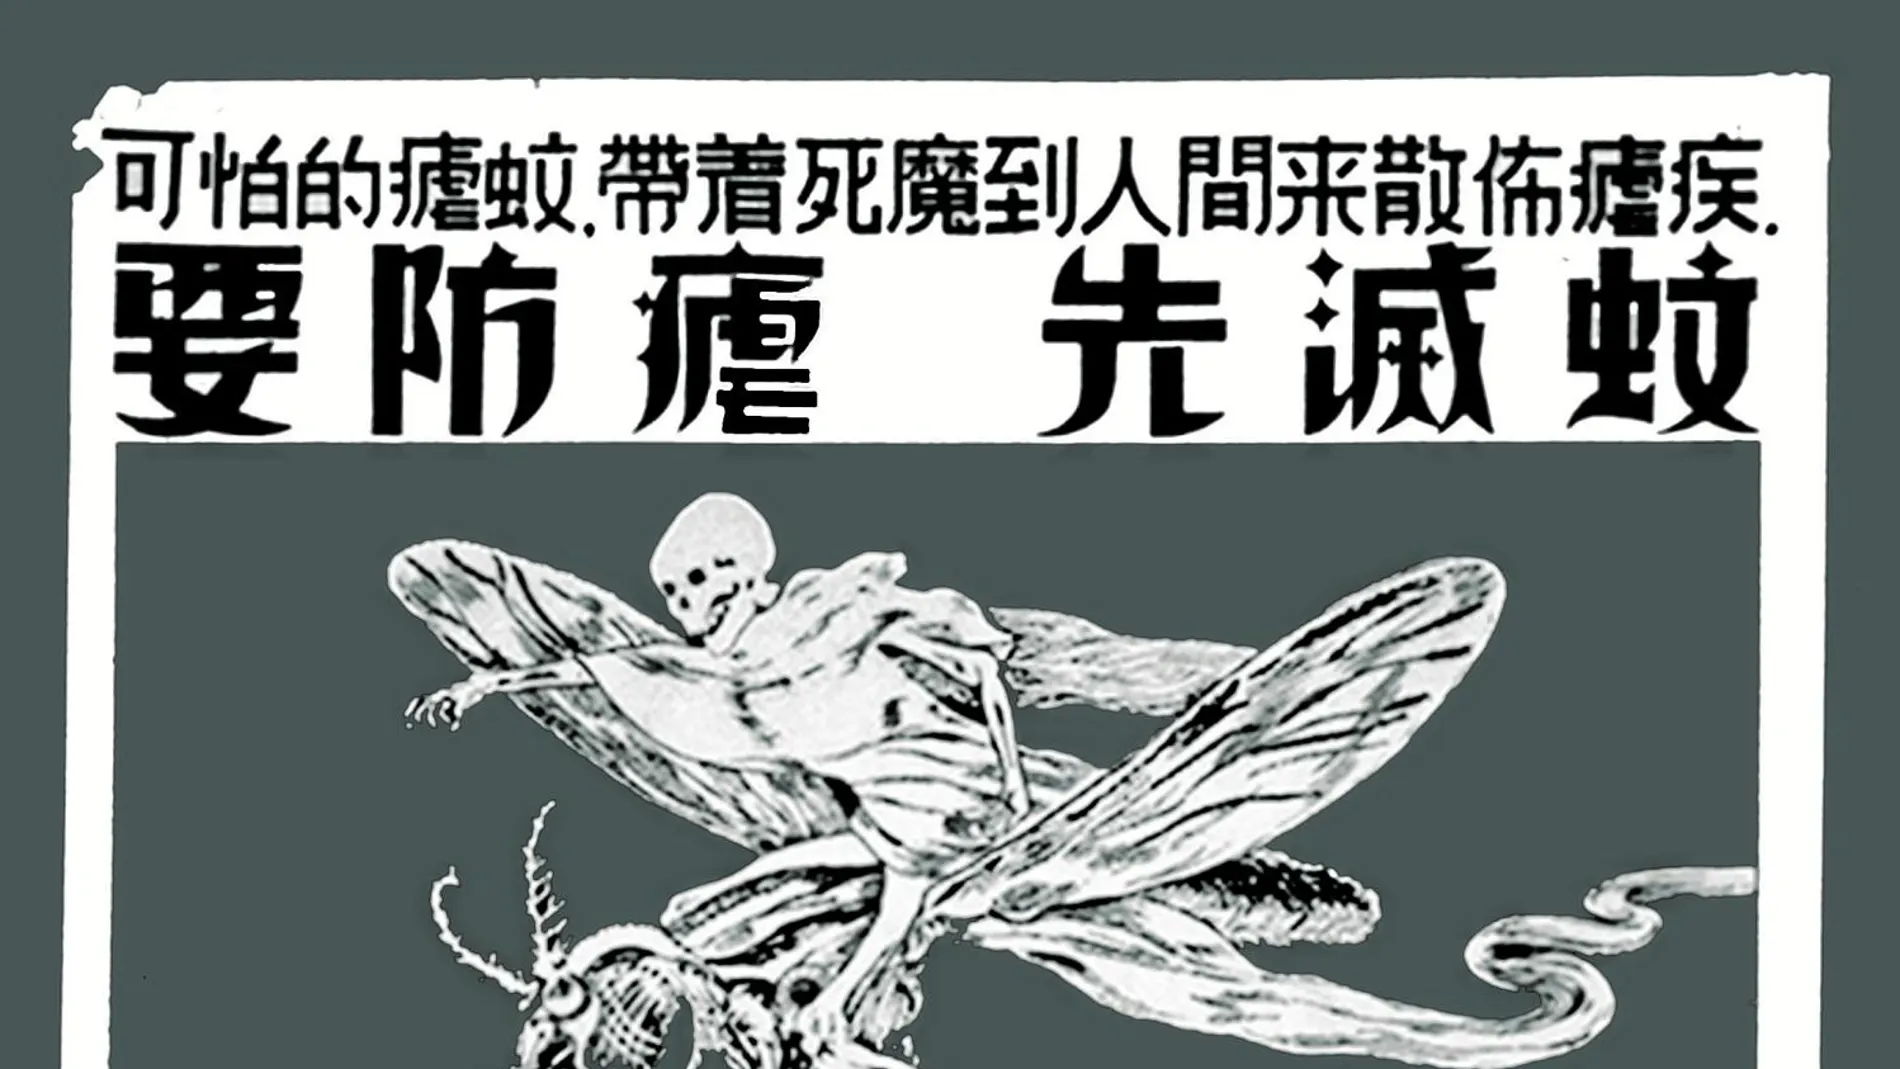 Un cartel antimalárico chino que alertaba al público sobre los mosquitos